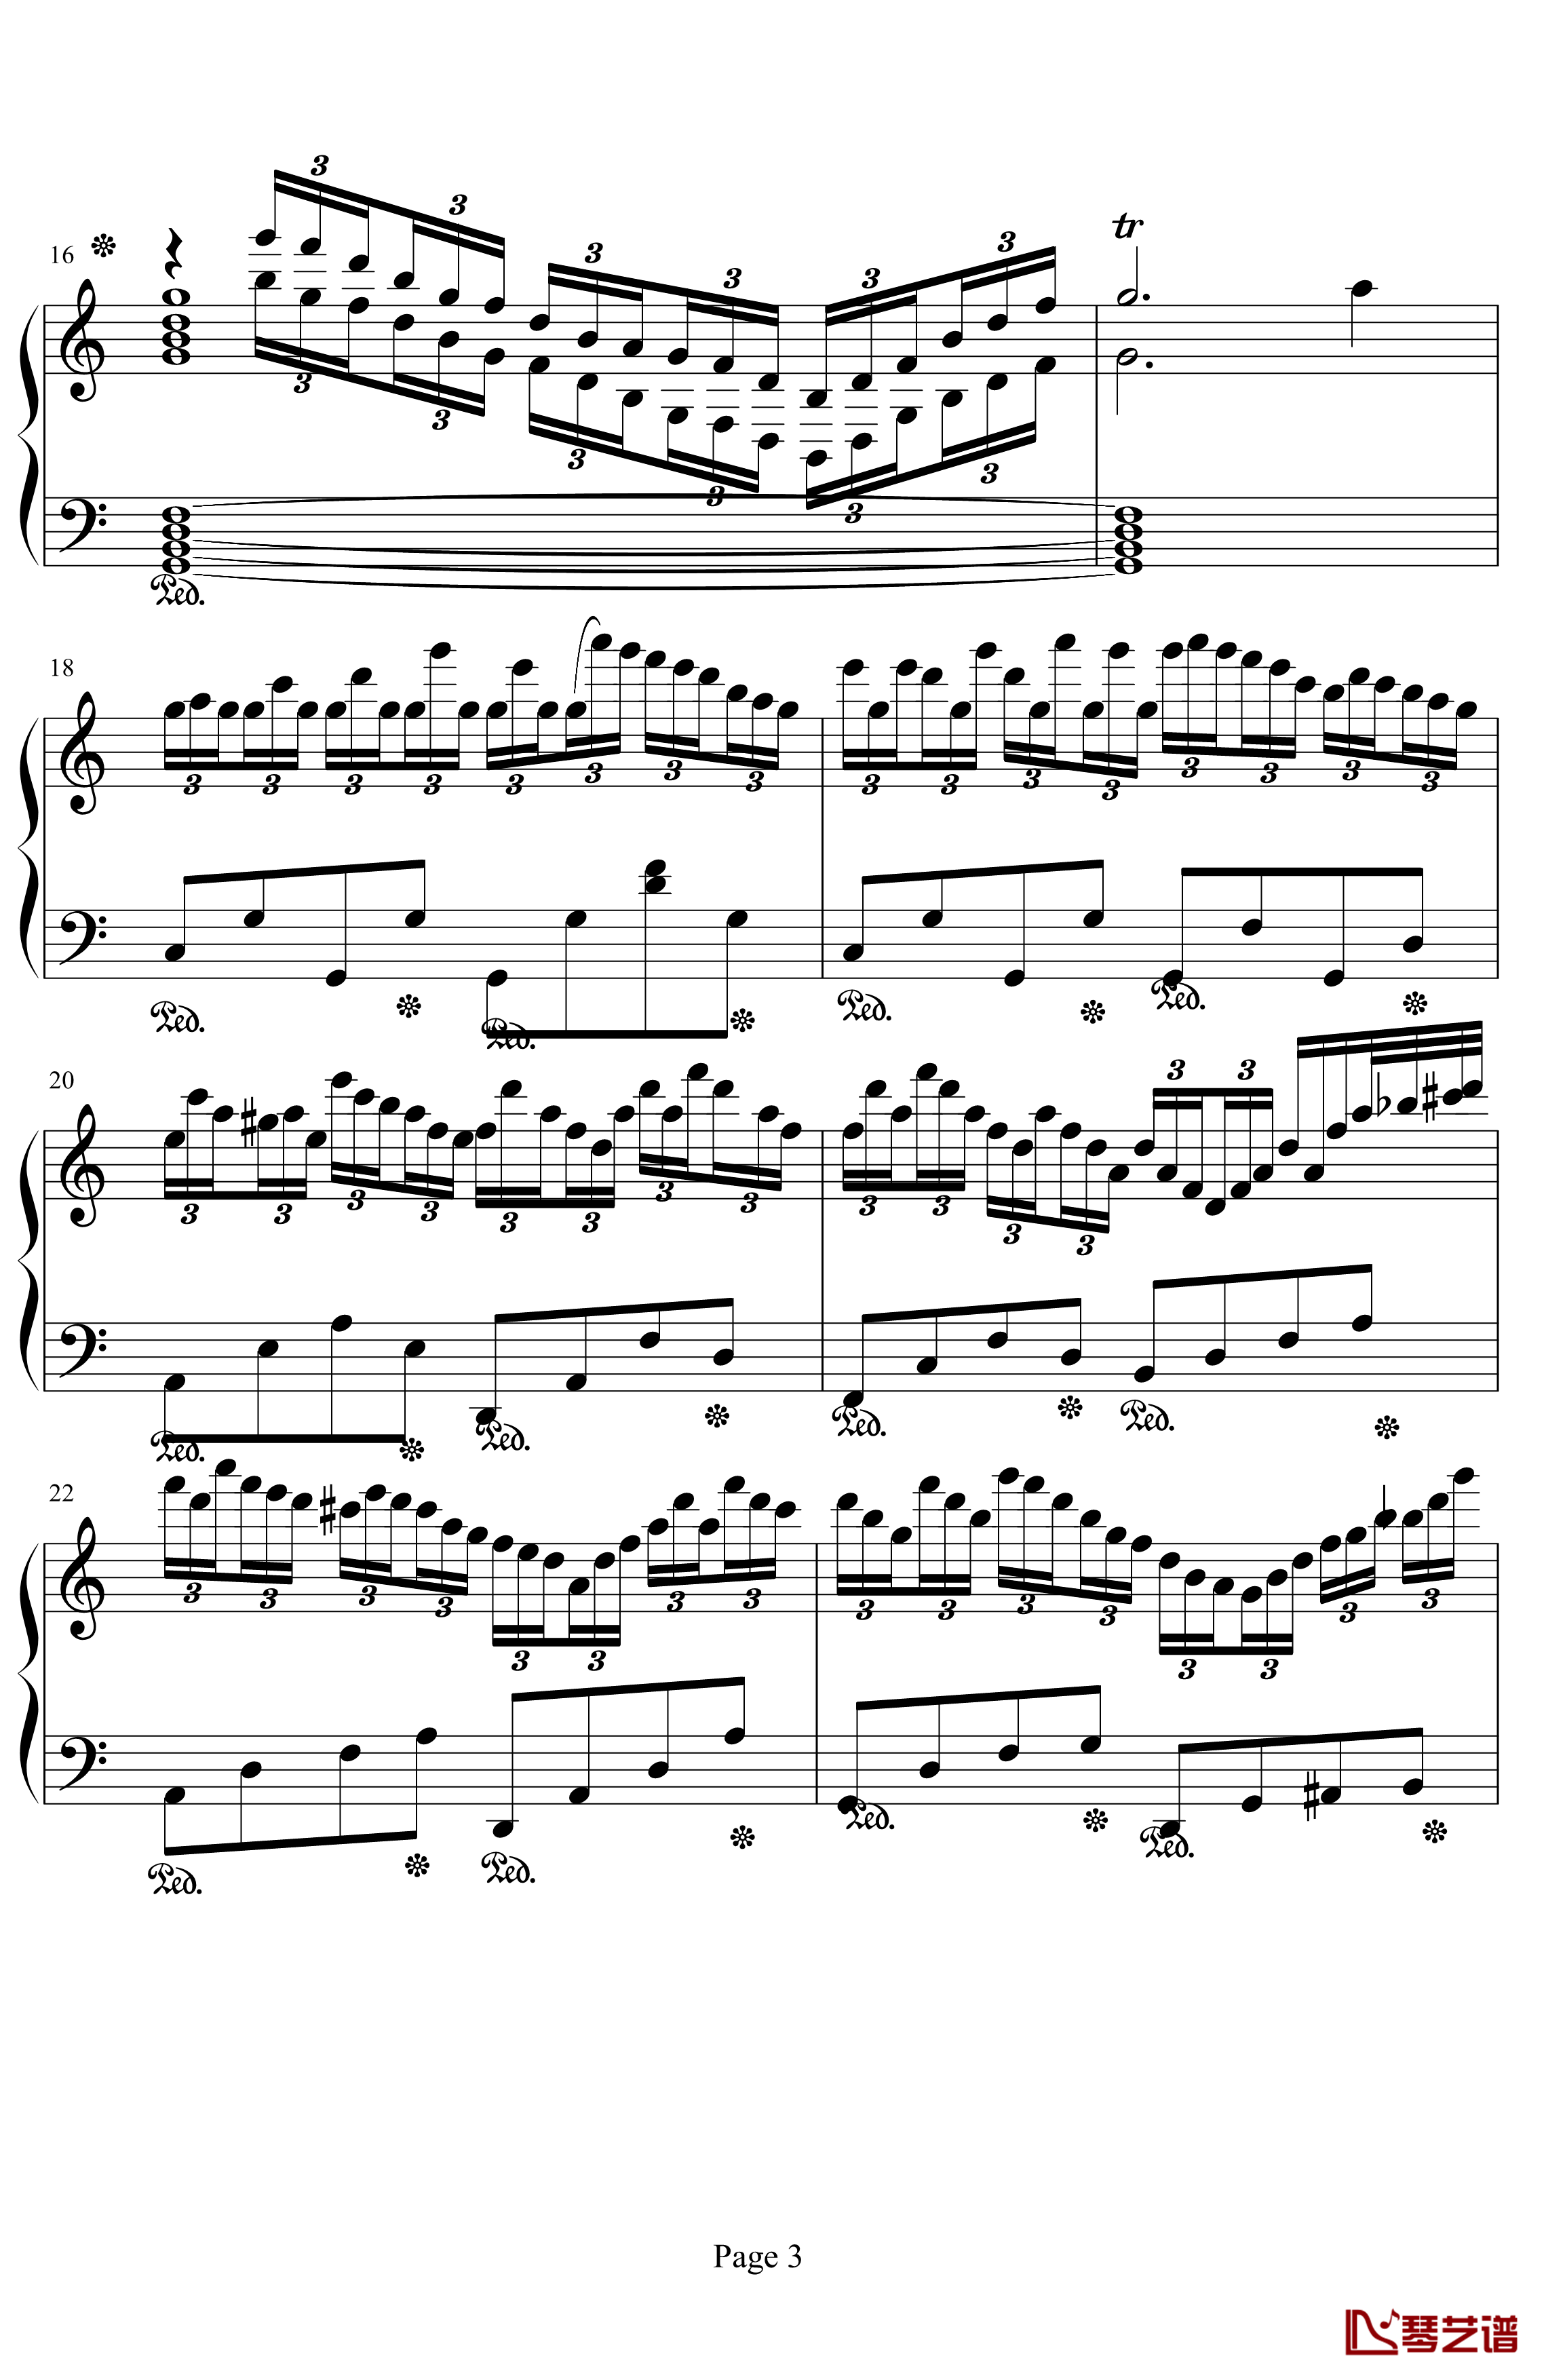 练习曲钢琴谱-peipei61112013